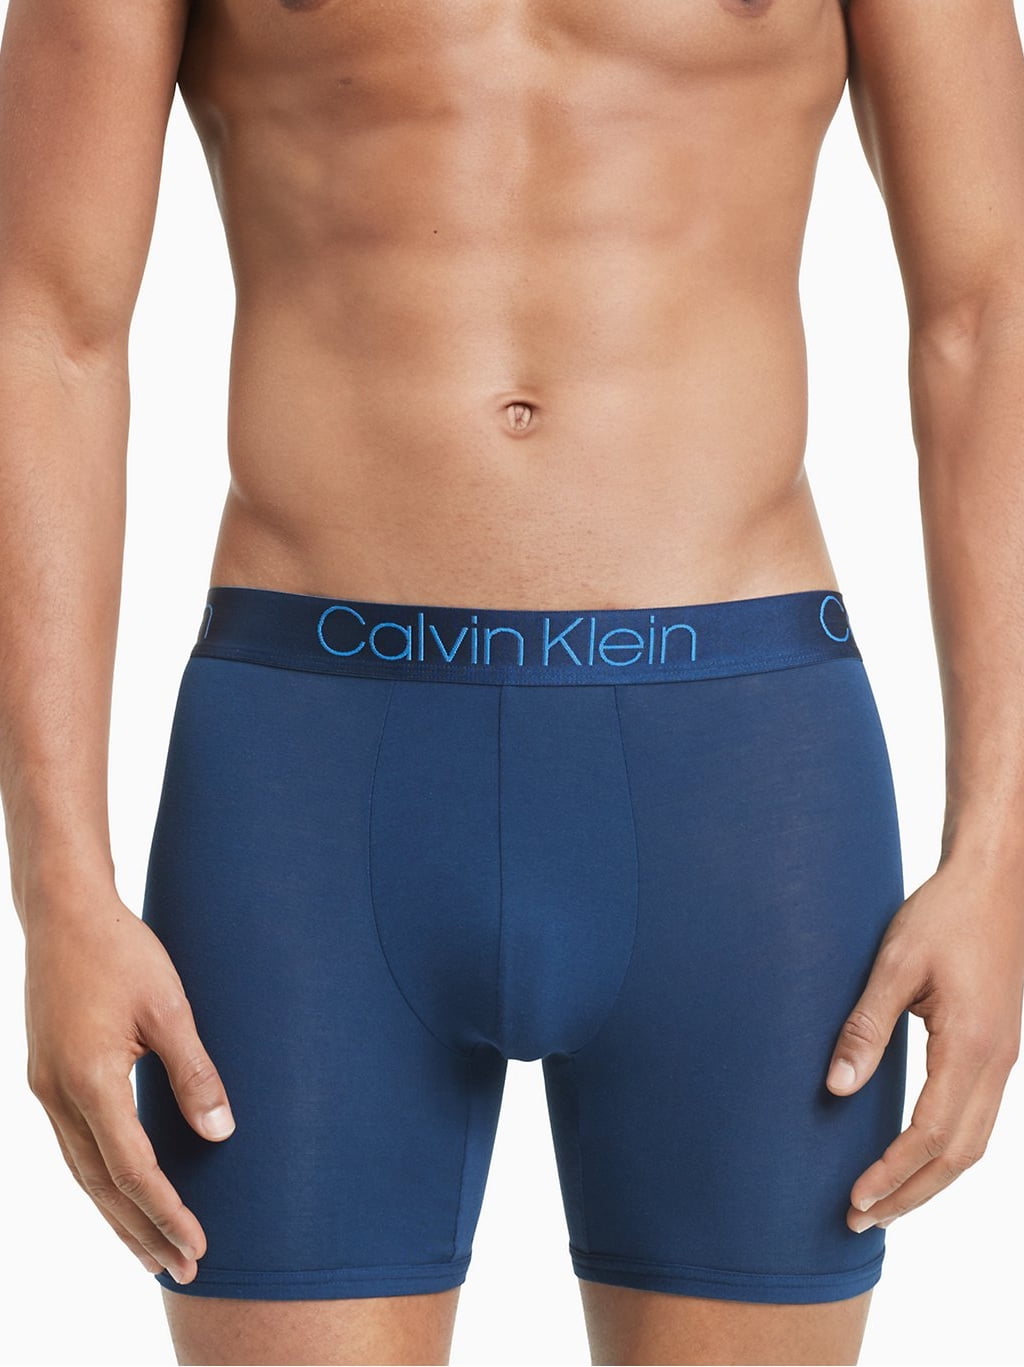 Calvin Klein Men's Ultra Soft Modal Boxer Brief, Blue Shadow, Medium -  